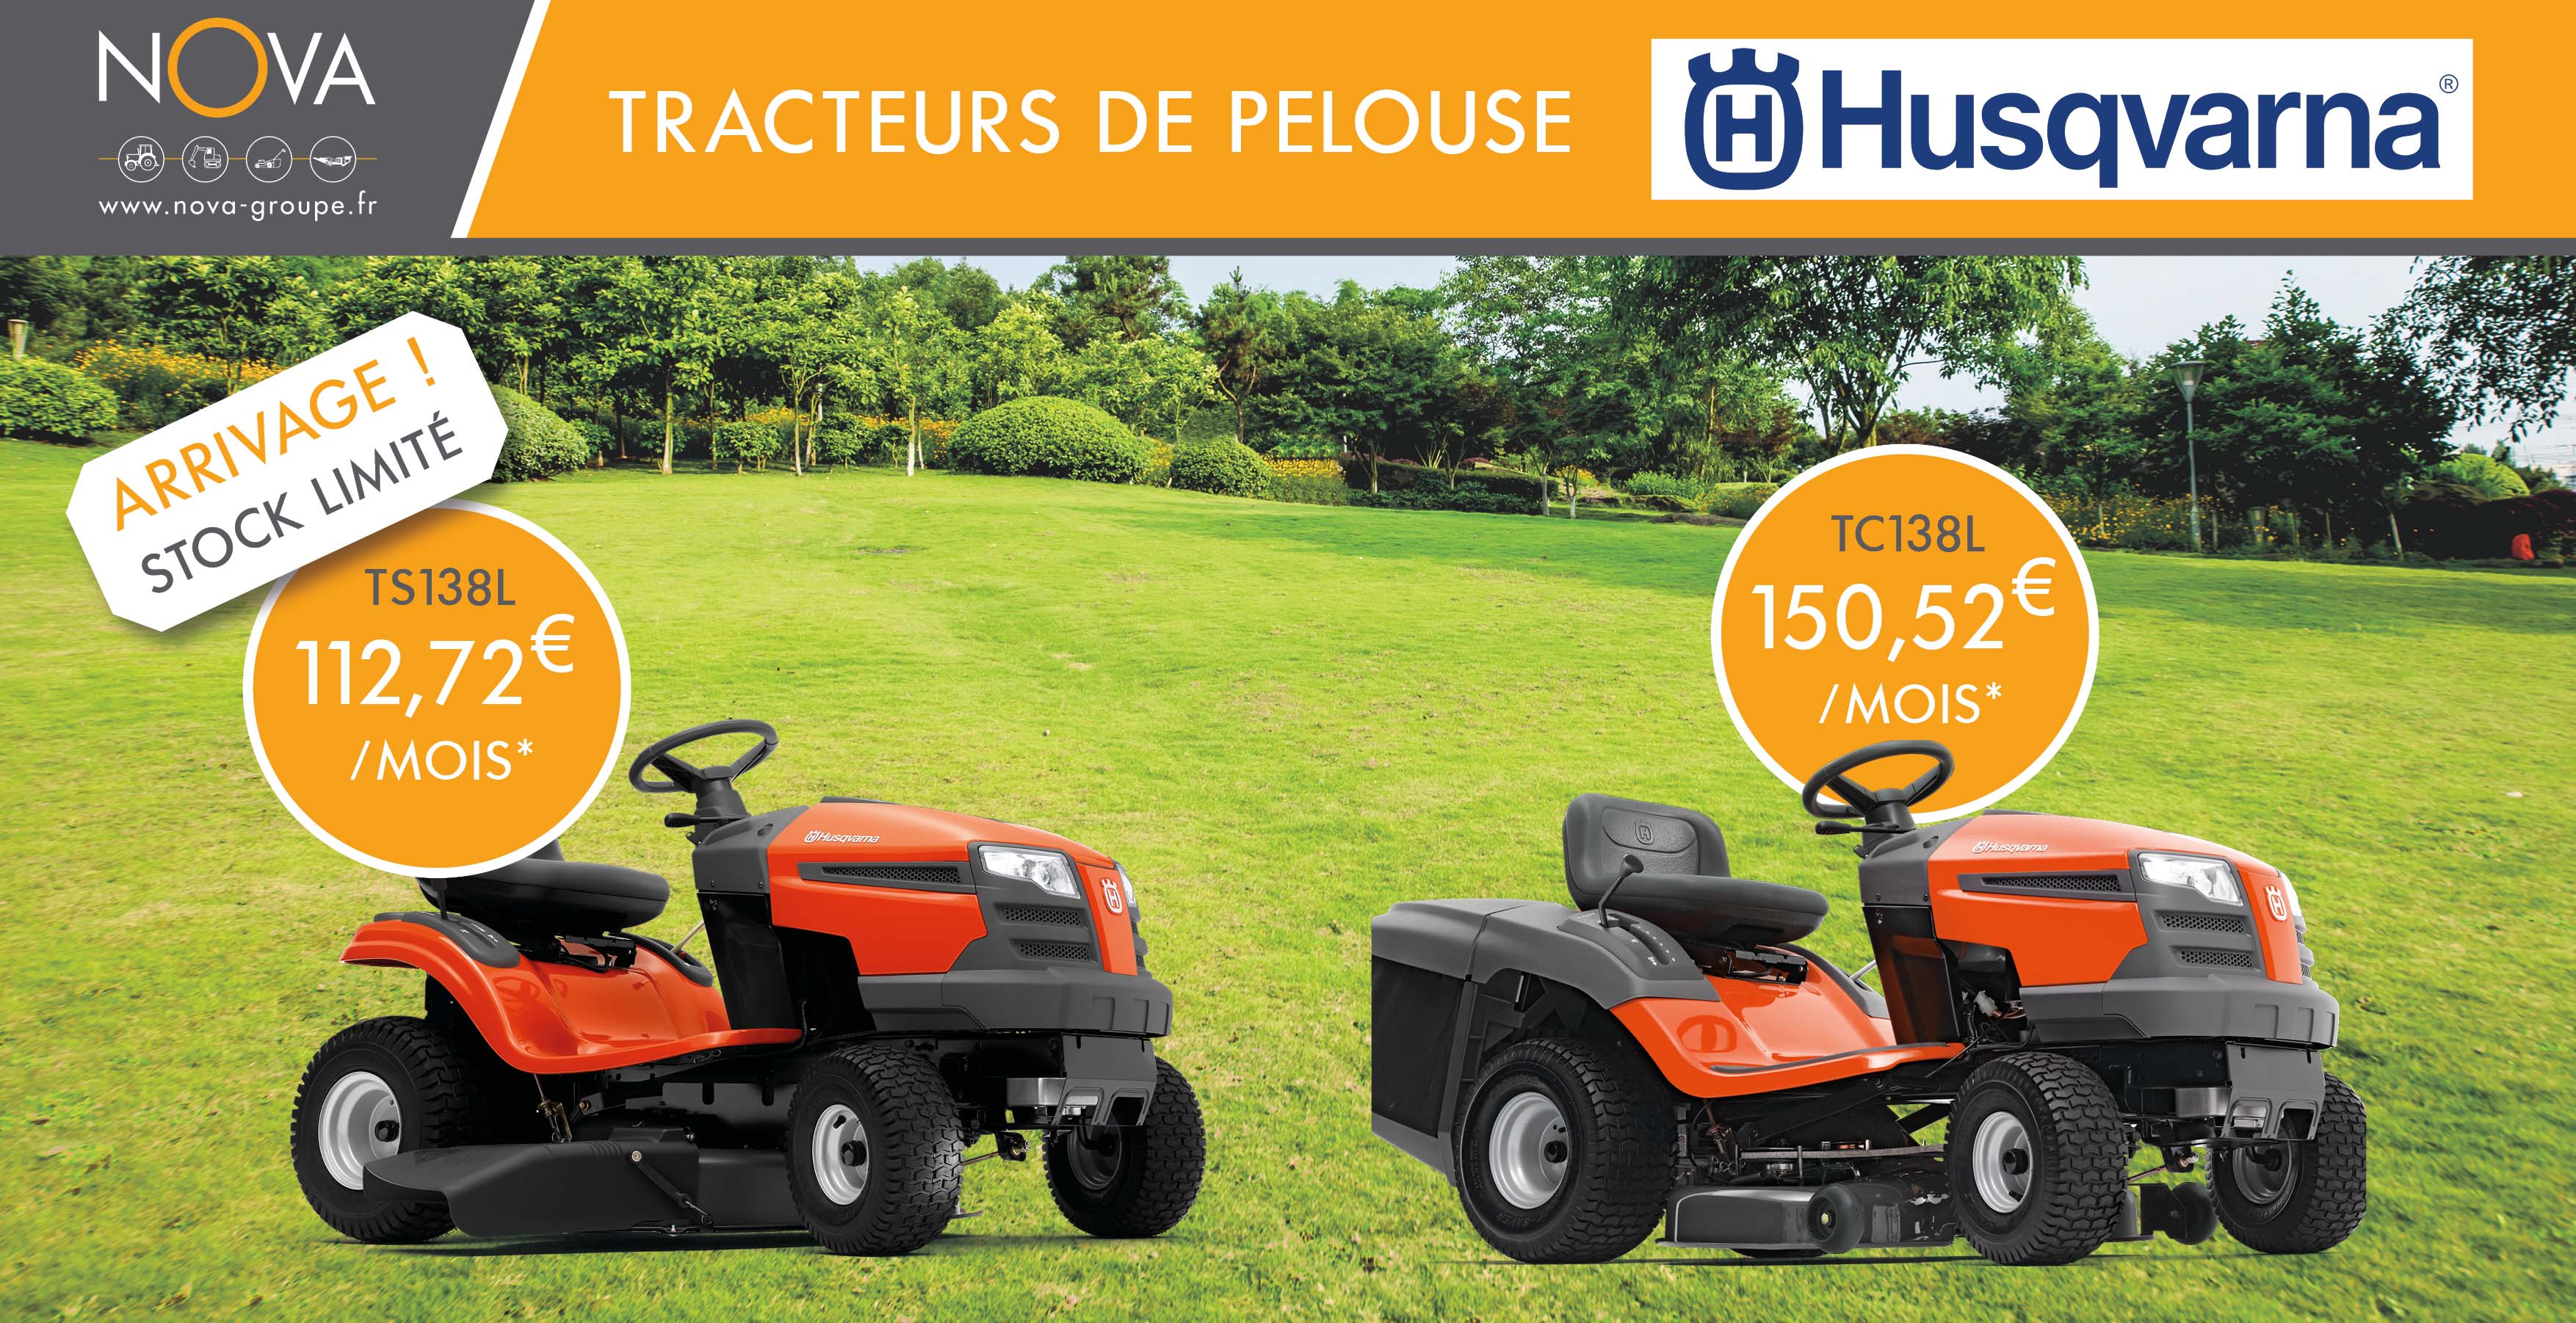 Campagne-tracteurs-de-pelouse-HUSQVARNA-03-2022 vignette